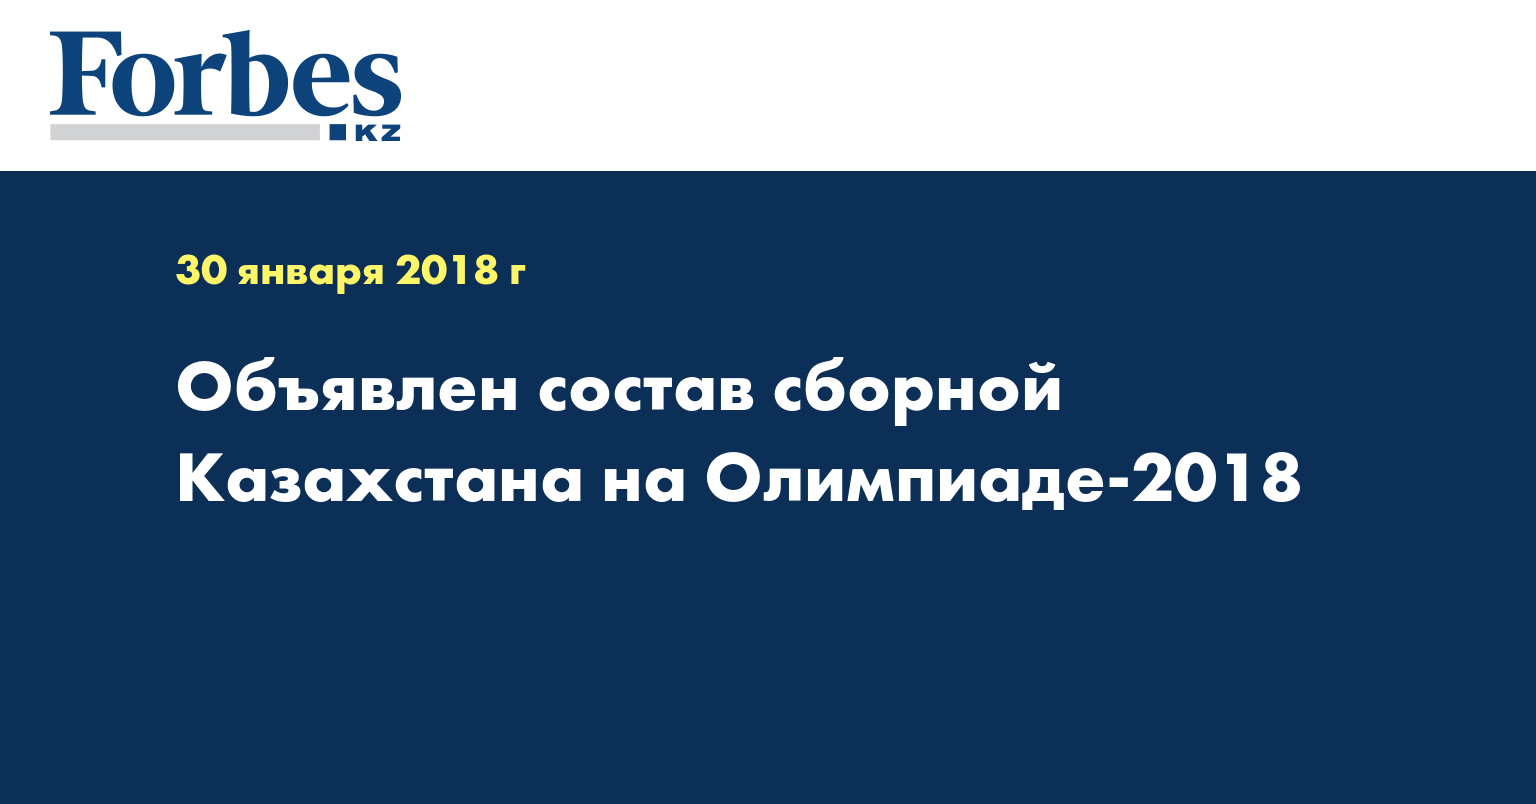 Объявлен состав сборной Казахстана на Олимпиаде-2018